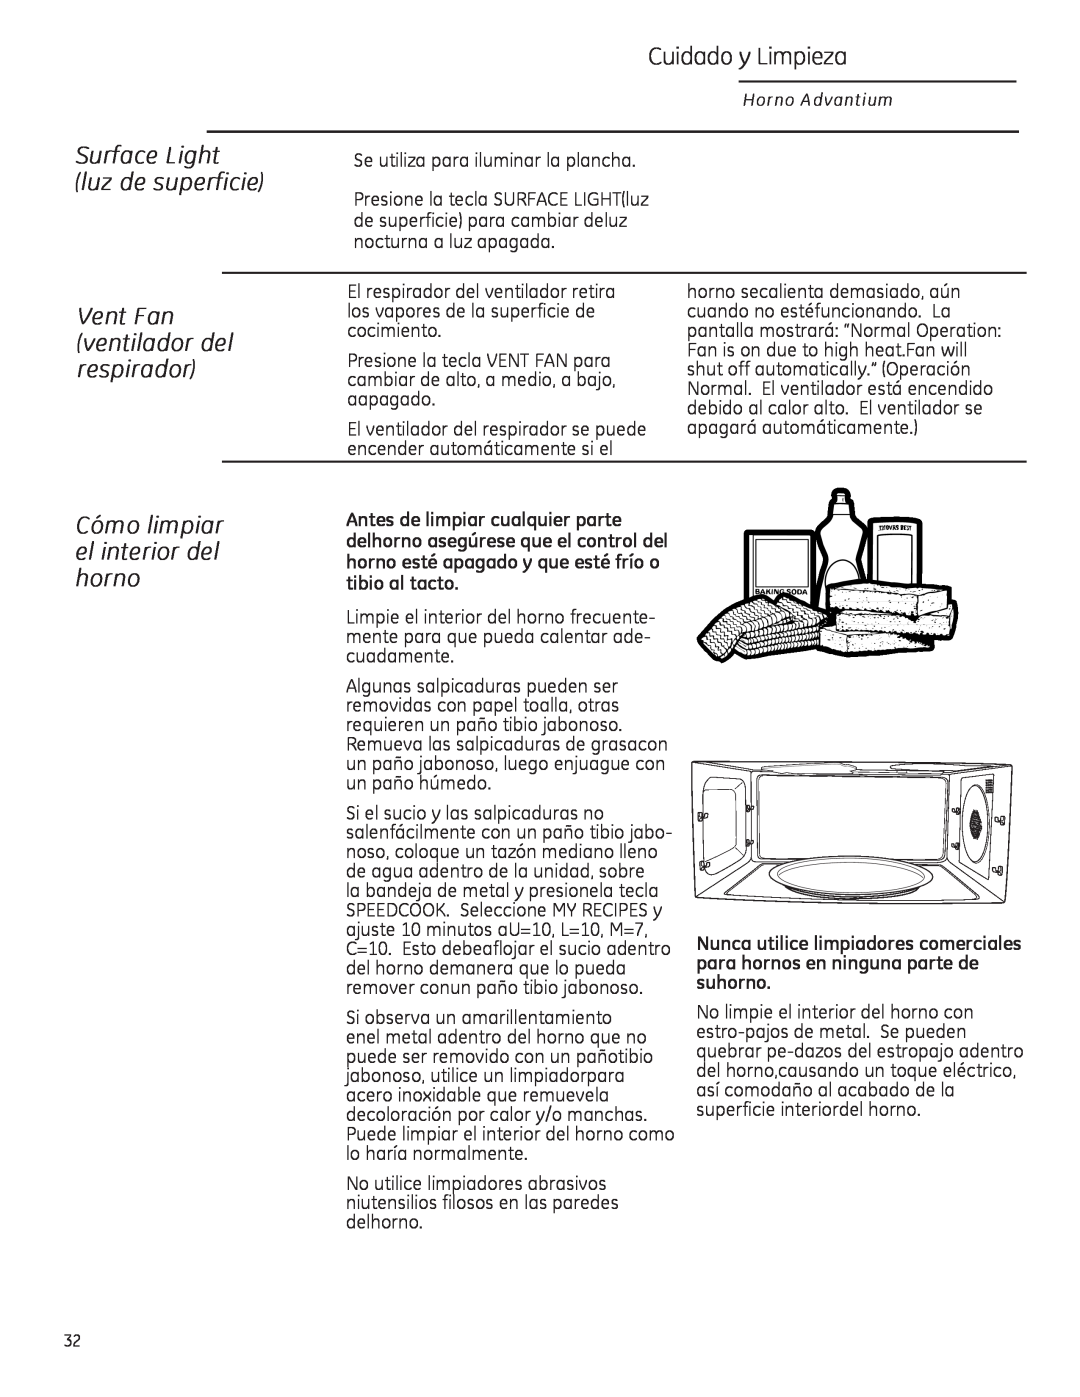 GE ZSA2201 owner manual Cuidado y Limpieza, Surface Light luz de superficie, Vent Fan ventilador del respirador 